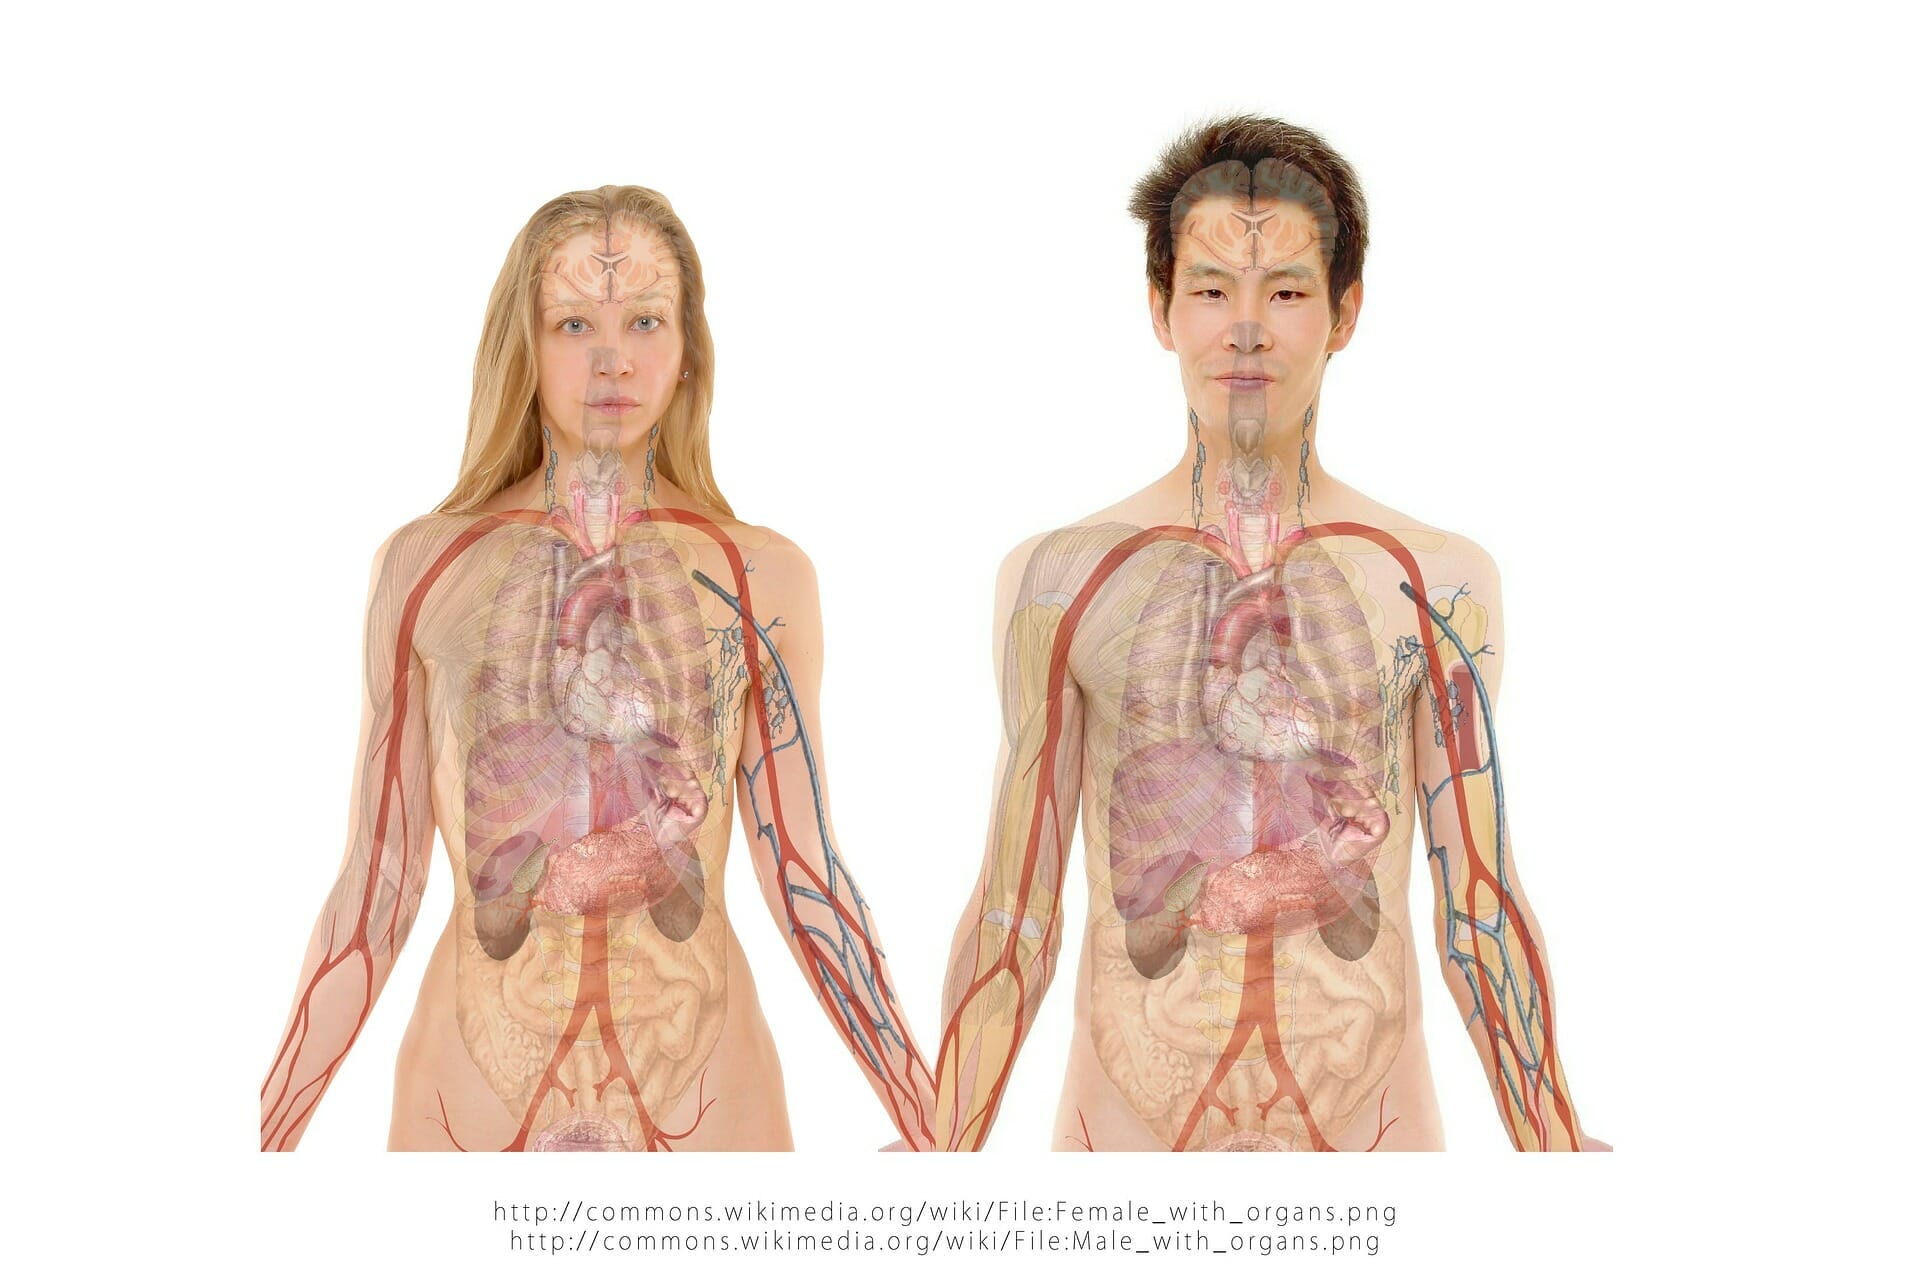 Gezamenlijke selectie boeren Bijna De anatomie van het menselijk lichaam: systemen, organen en hersenen